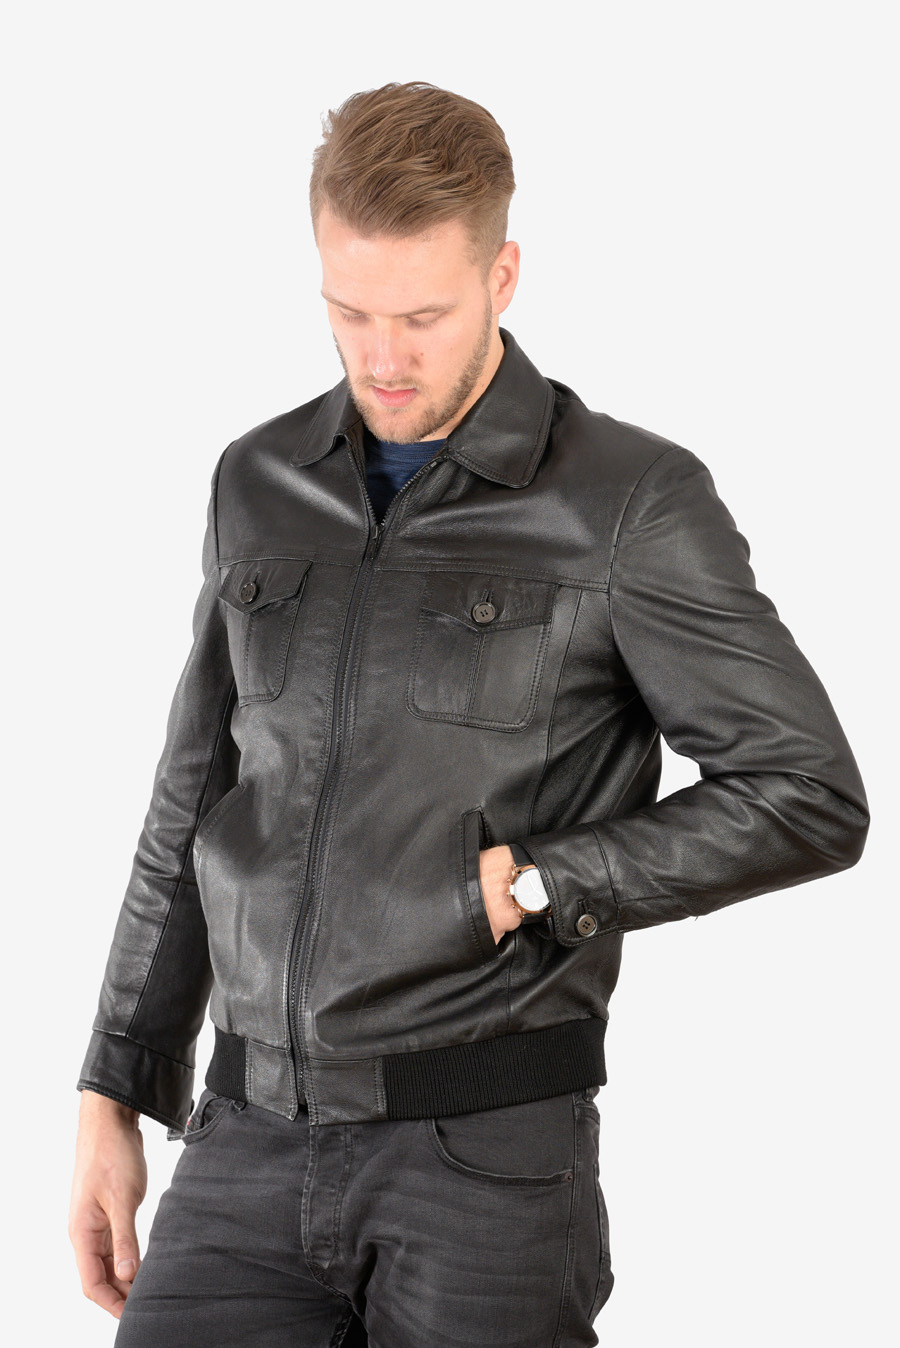 Men s Vintage  Black Leather Bomber  Jacket  Size L Brick 